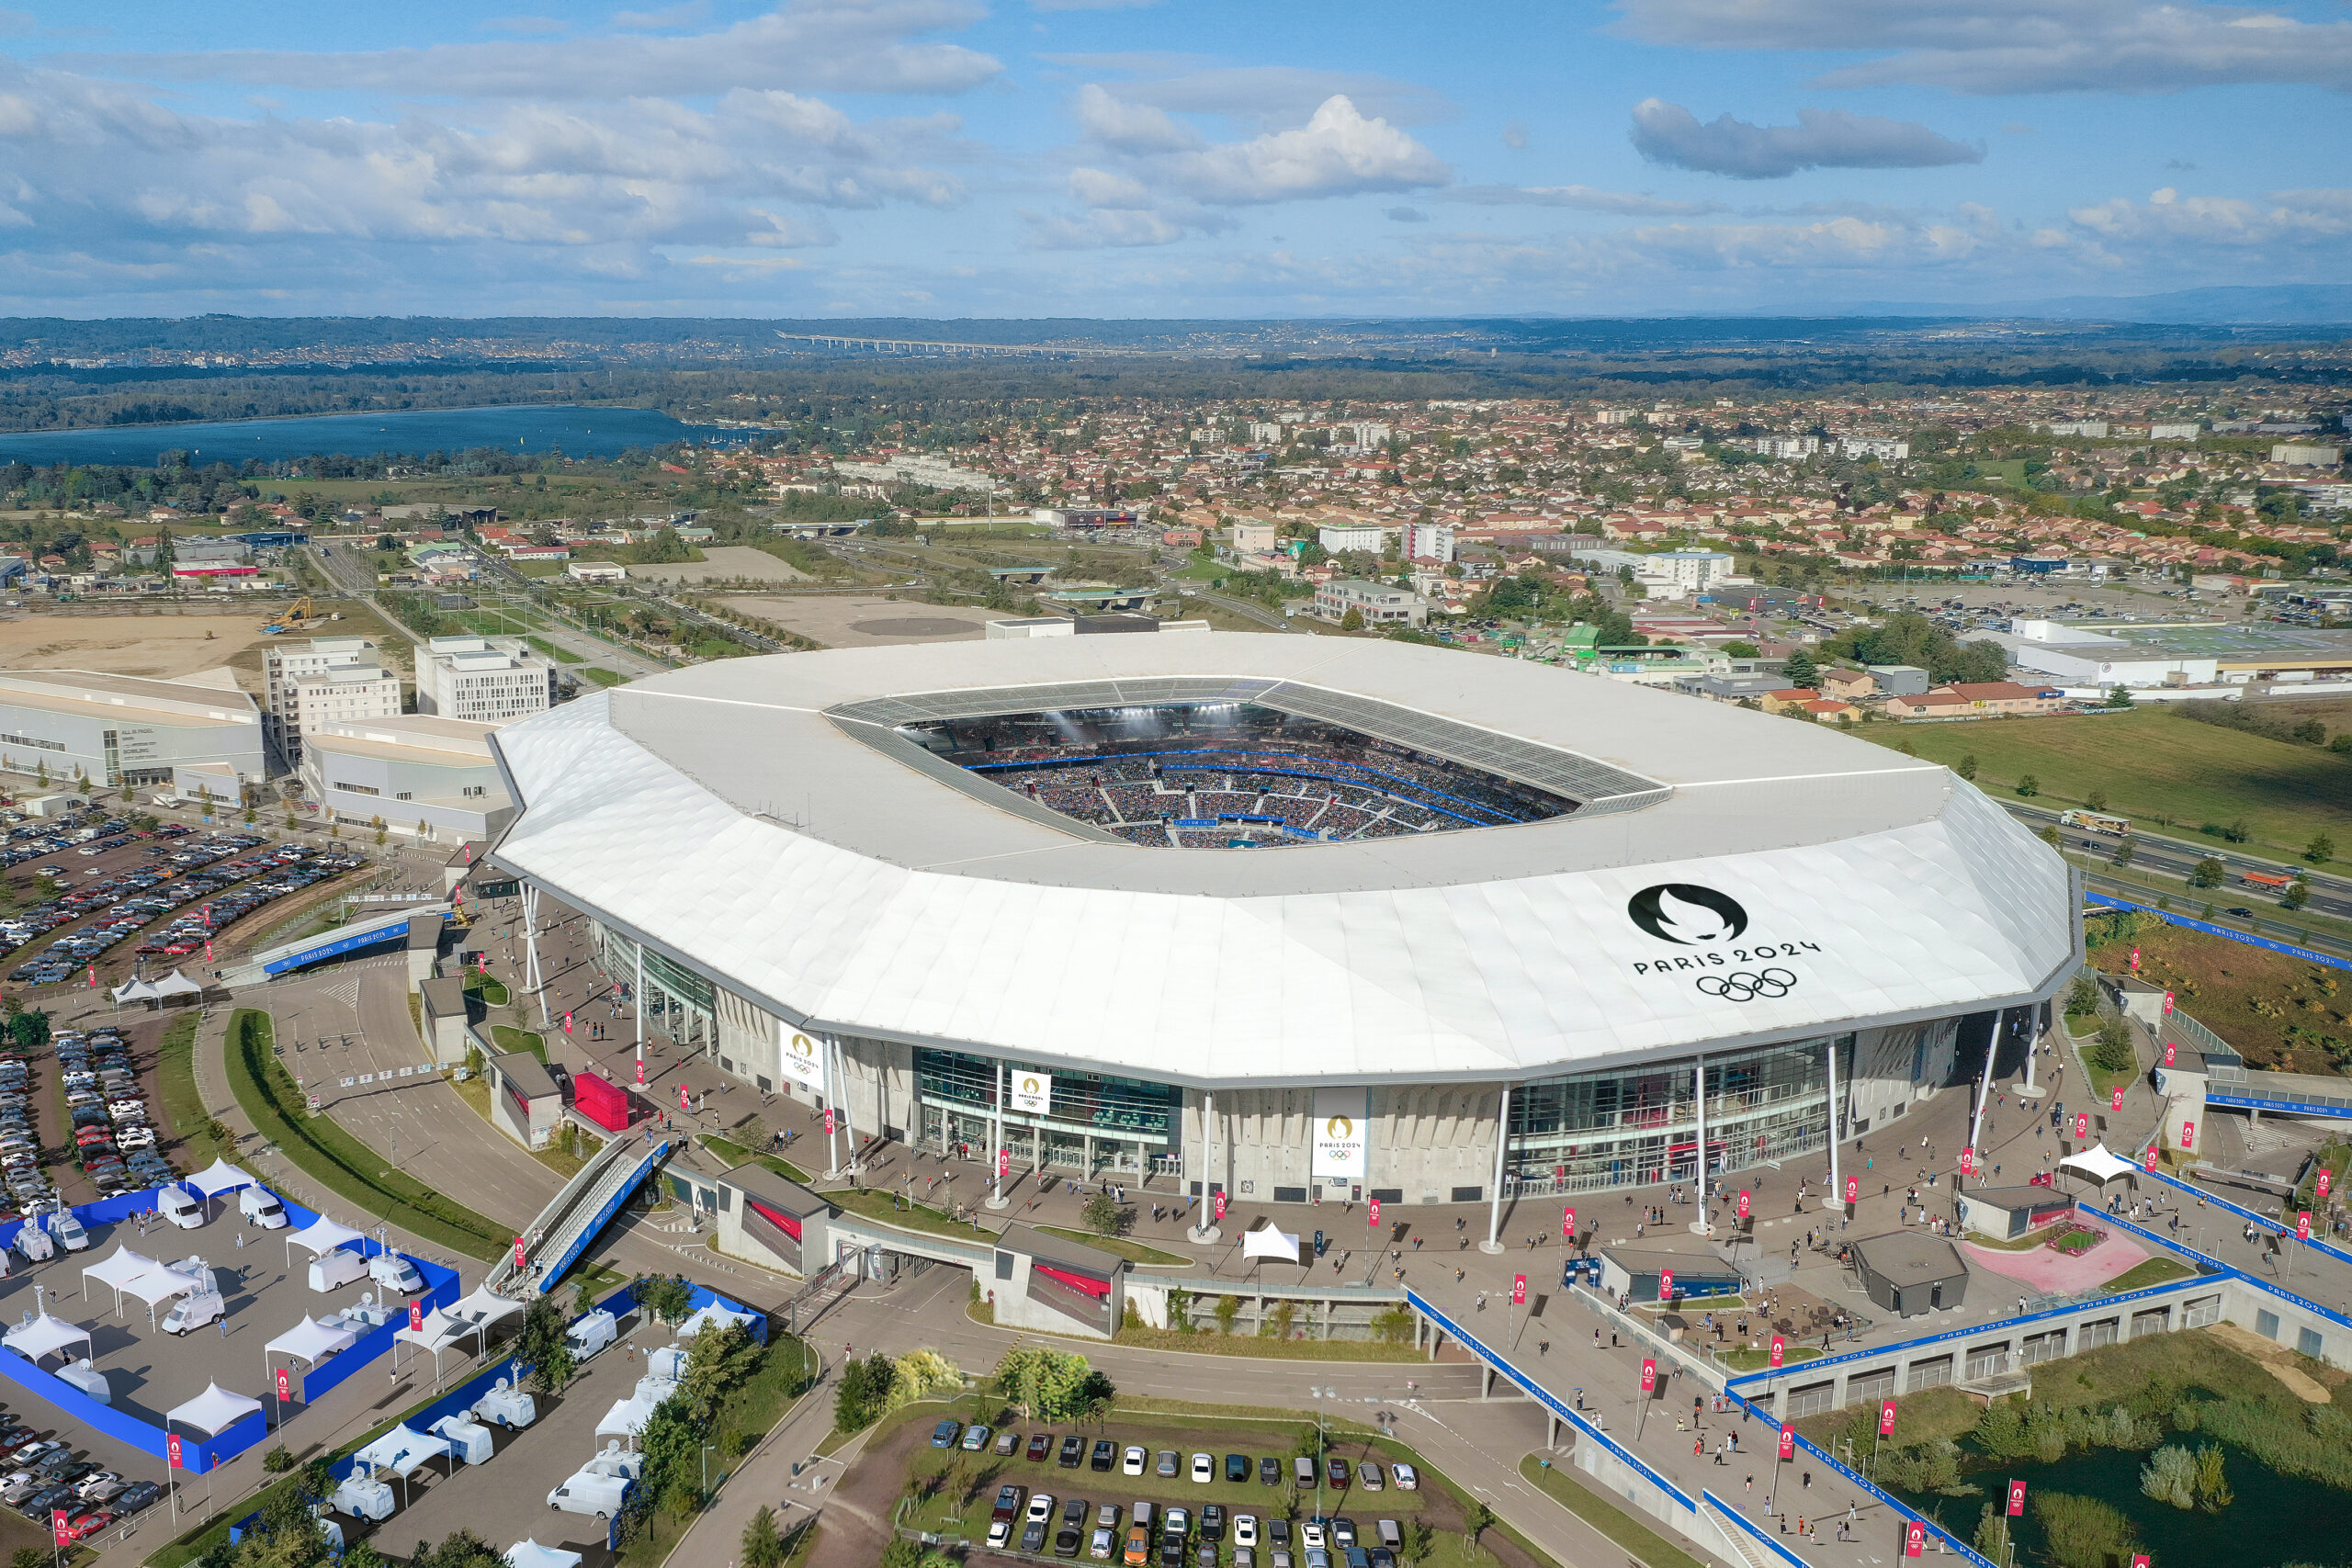 JO de Paris 2024 : le calendrier des matchs Olympiques à Lyon-Décines  dévoilé - OL Vallée